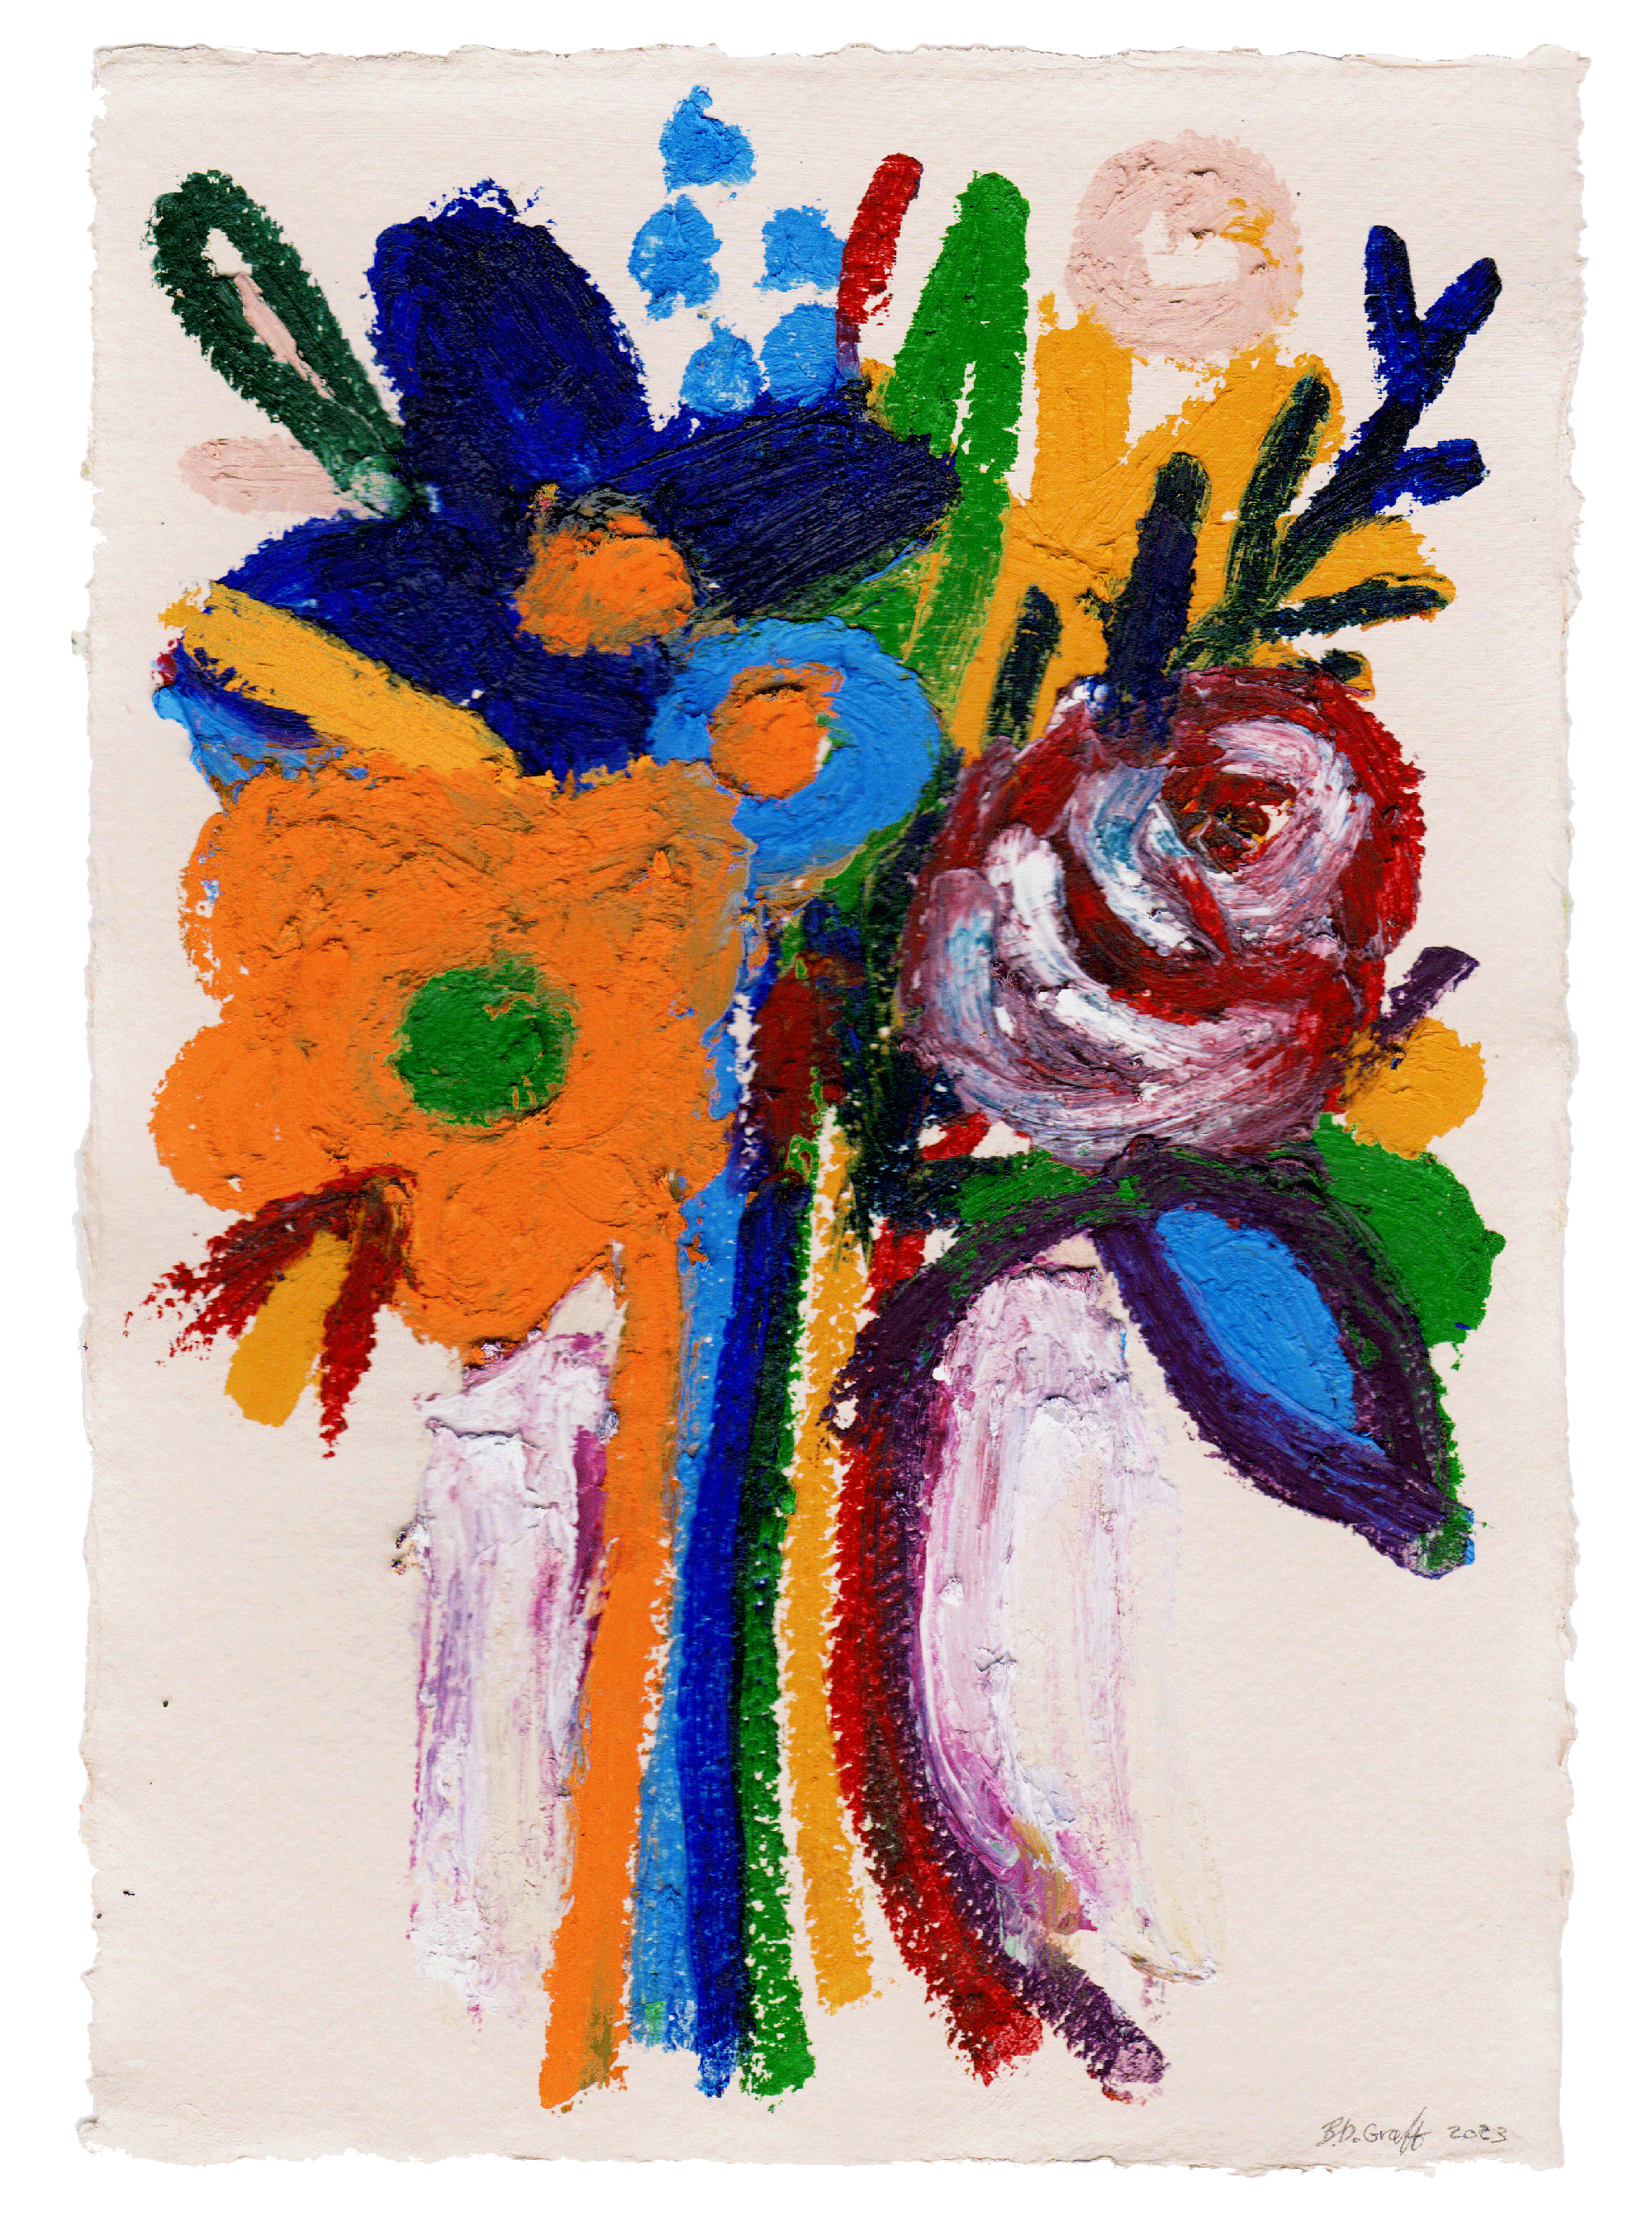 Colourful Bouquet